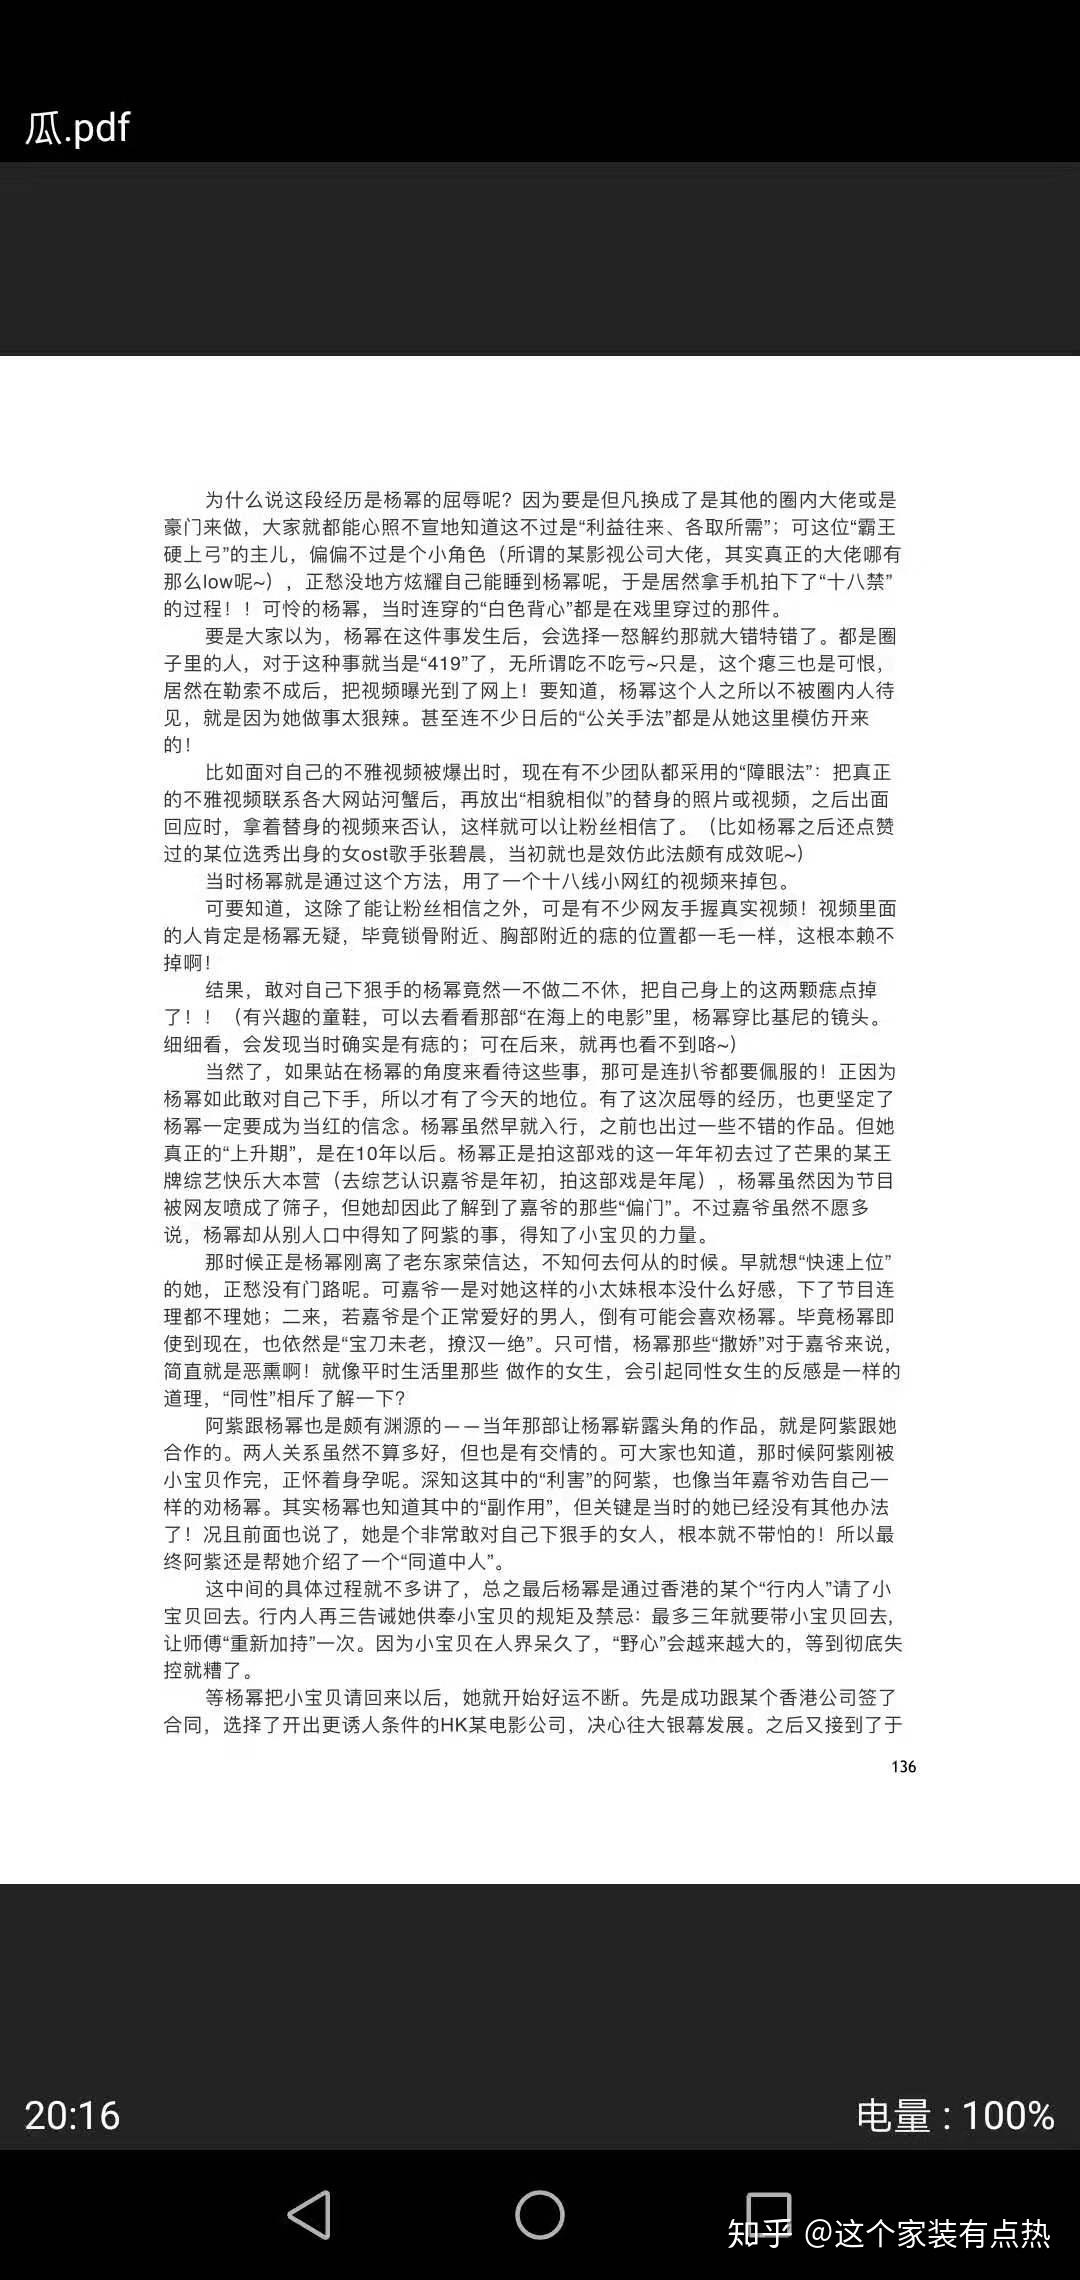 421页郑爽内容截图图片